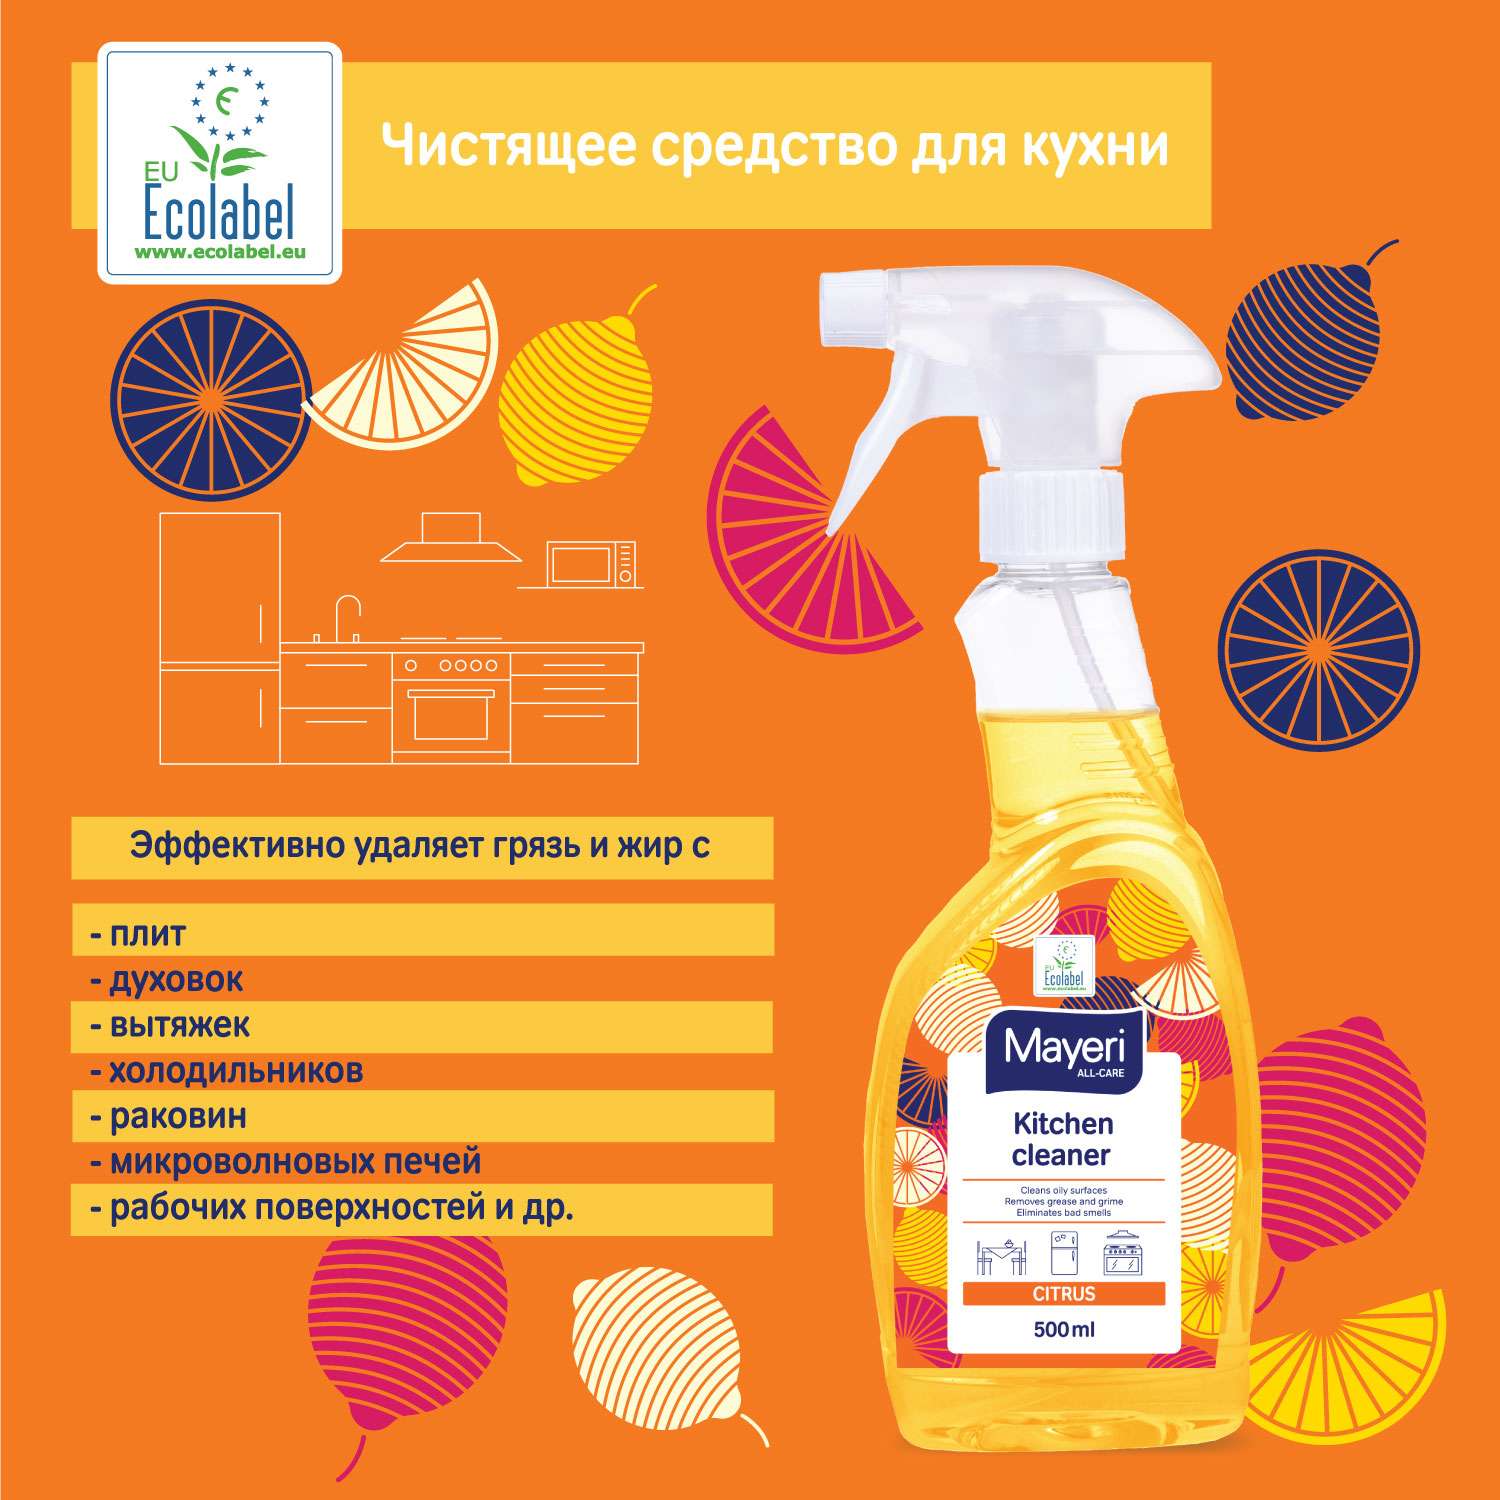 Чистящее средство Mayeri Sensitive экологичное для кухни с апельсином all-care 500 мл - фото 6